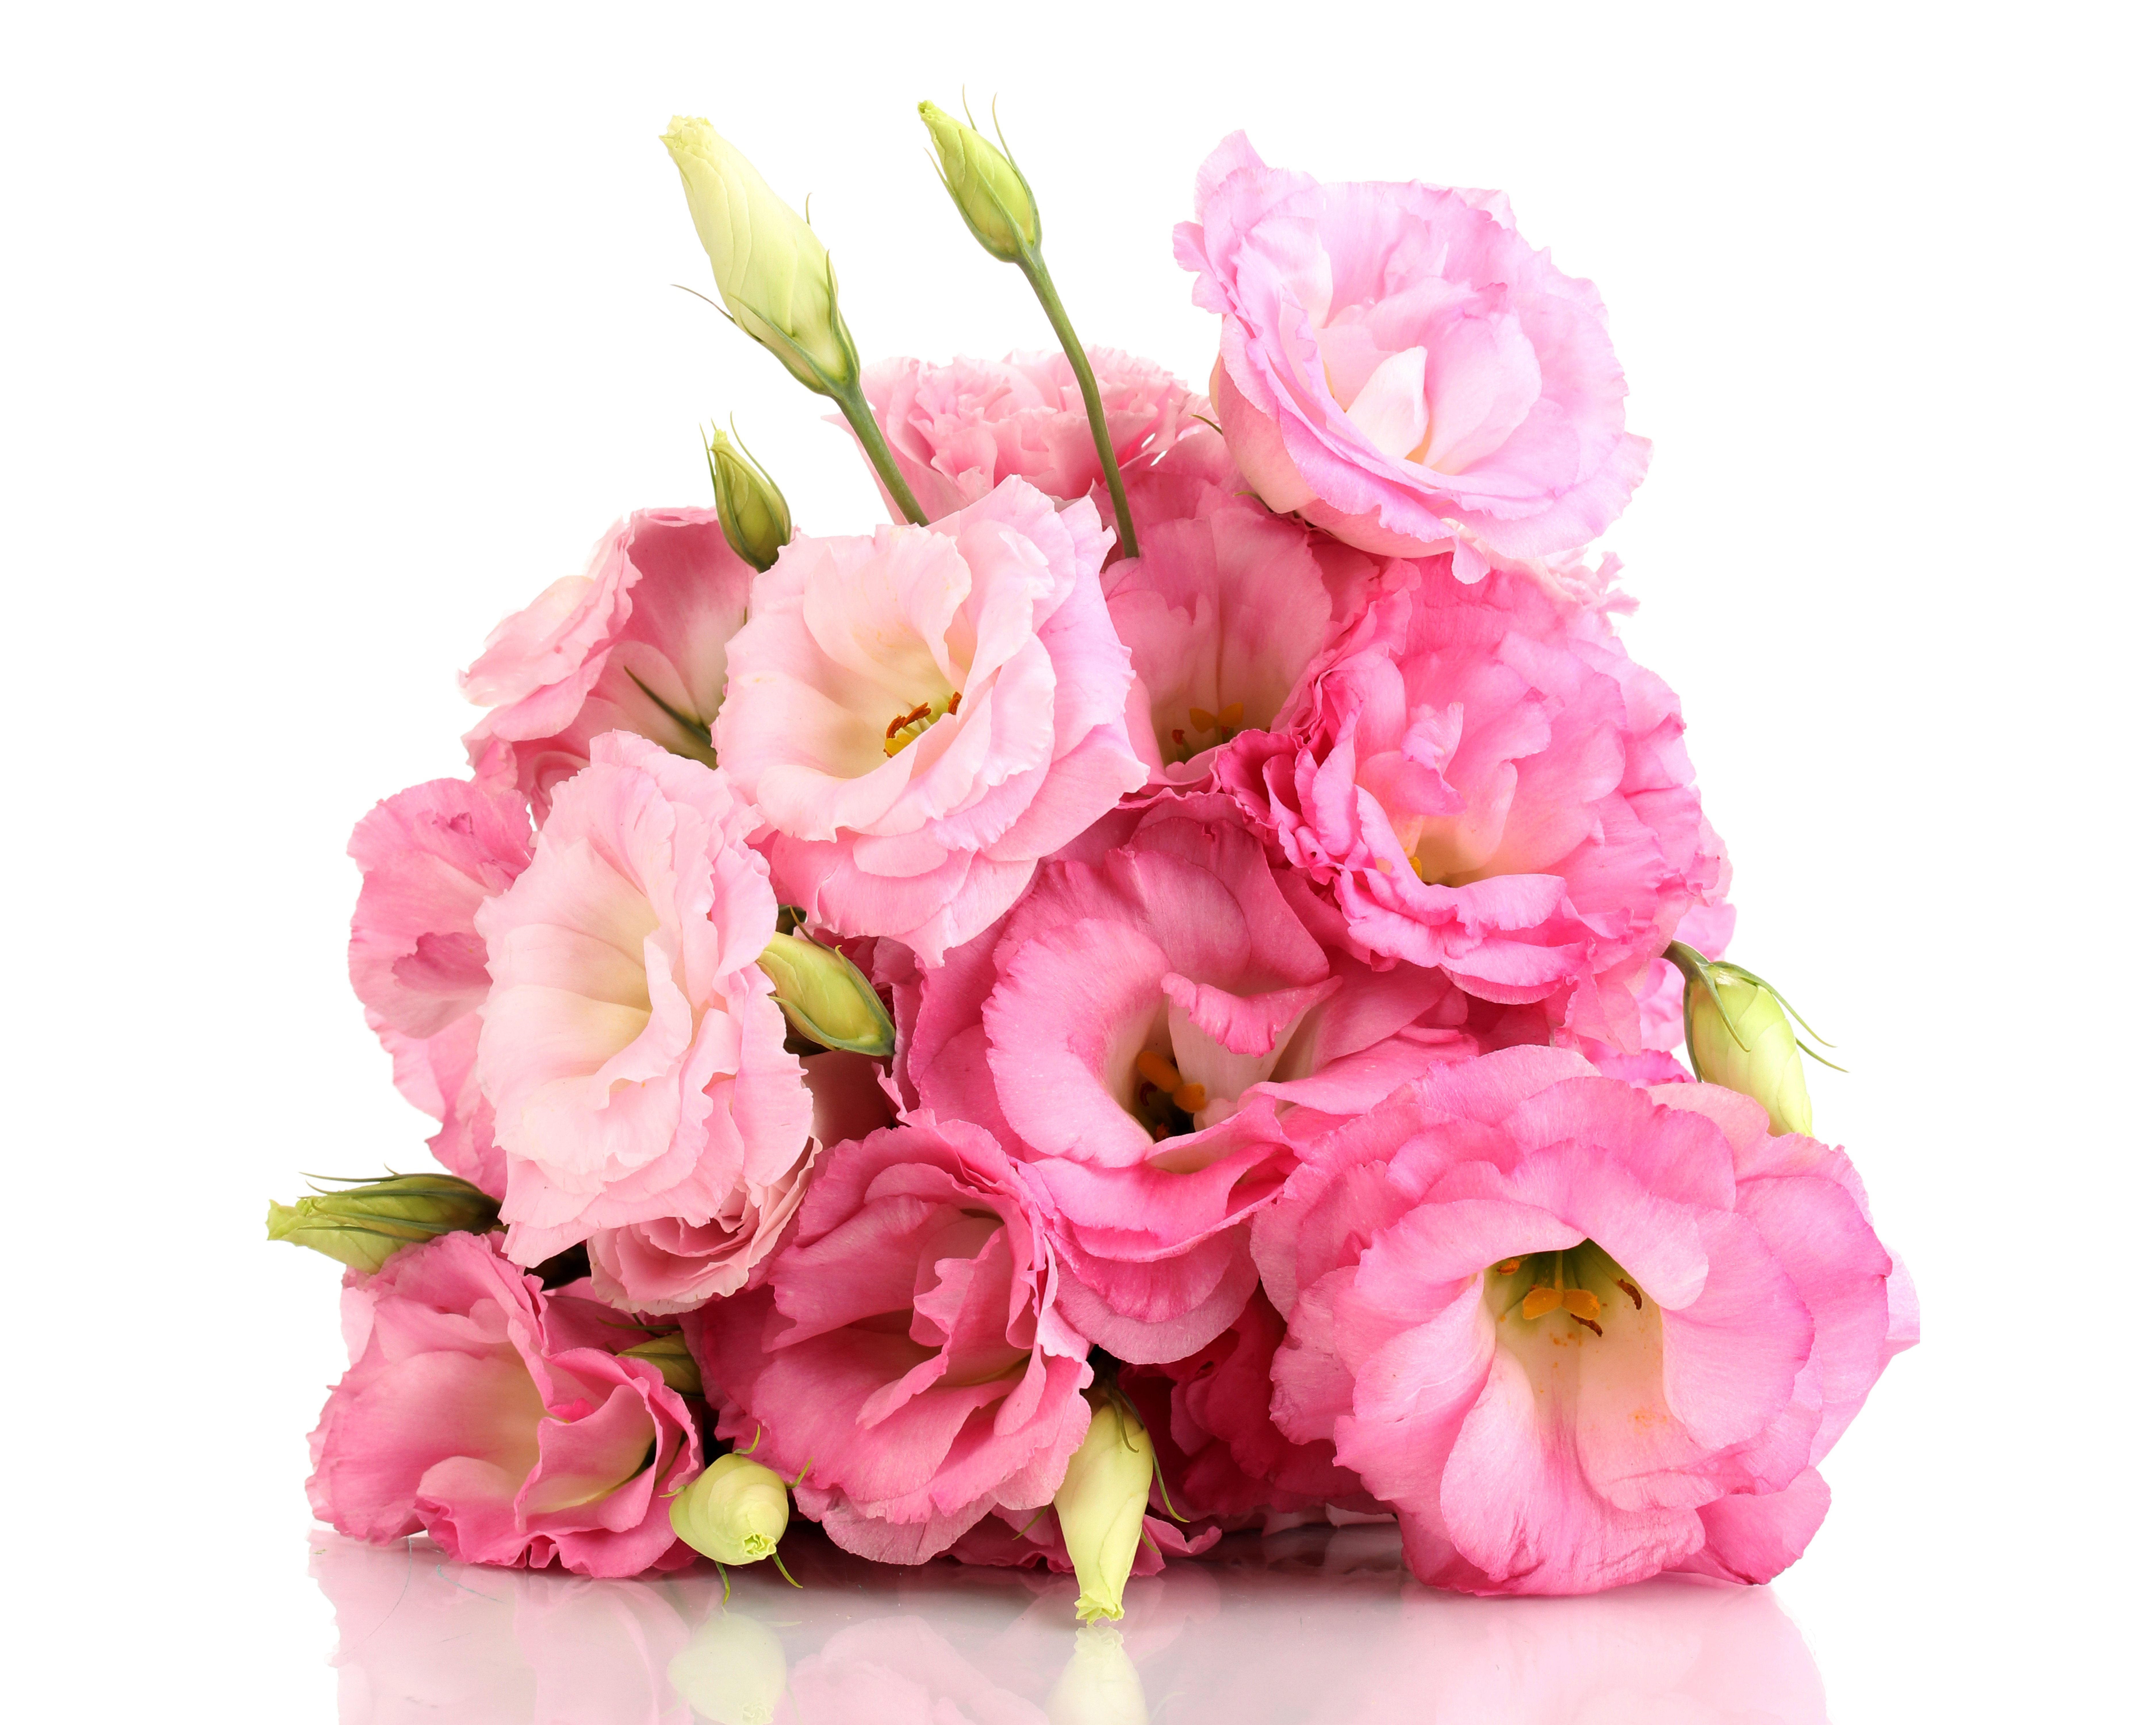 由洋桔梗在白色背景上的粉红色花朵的美丽花束 高清图片 壁纸 酷酷桌面